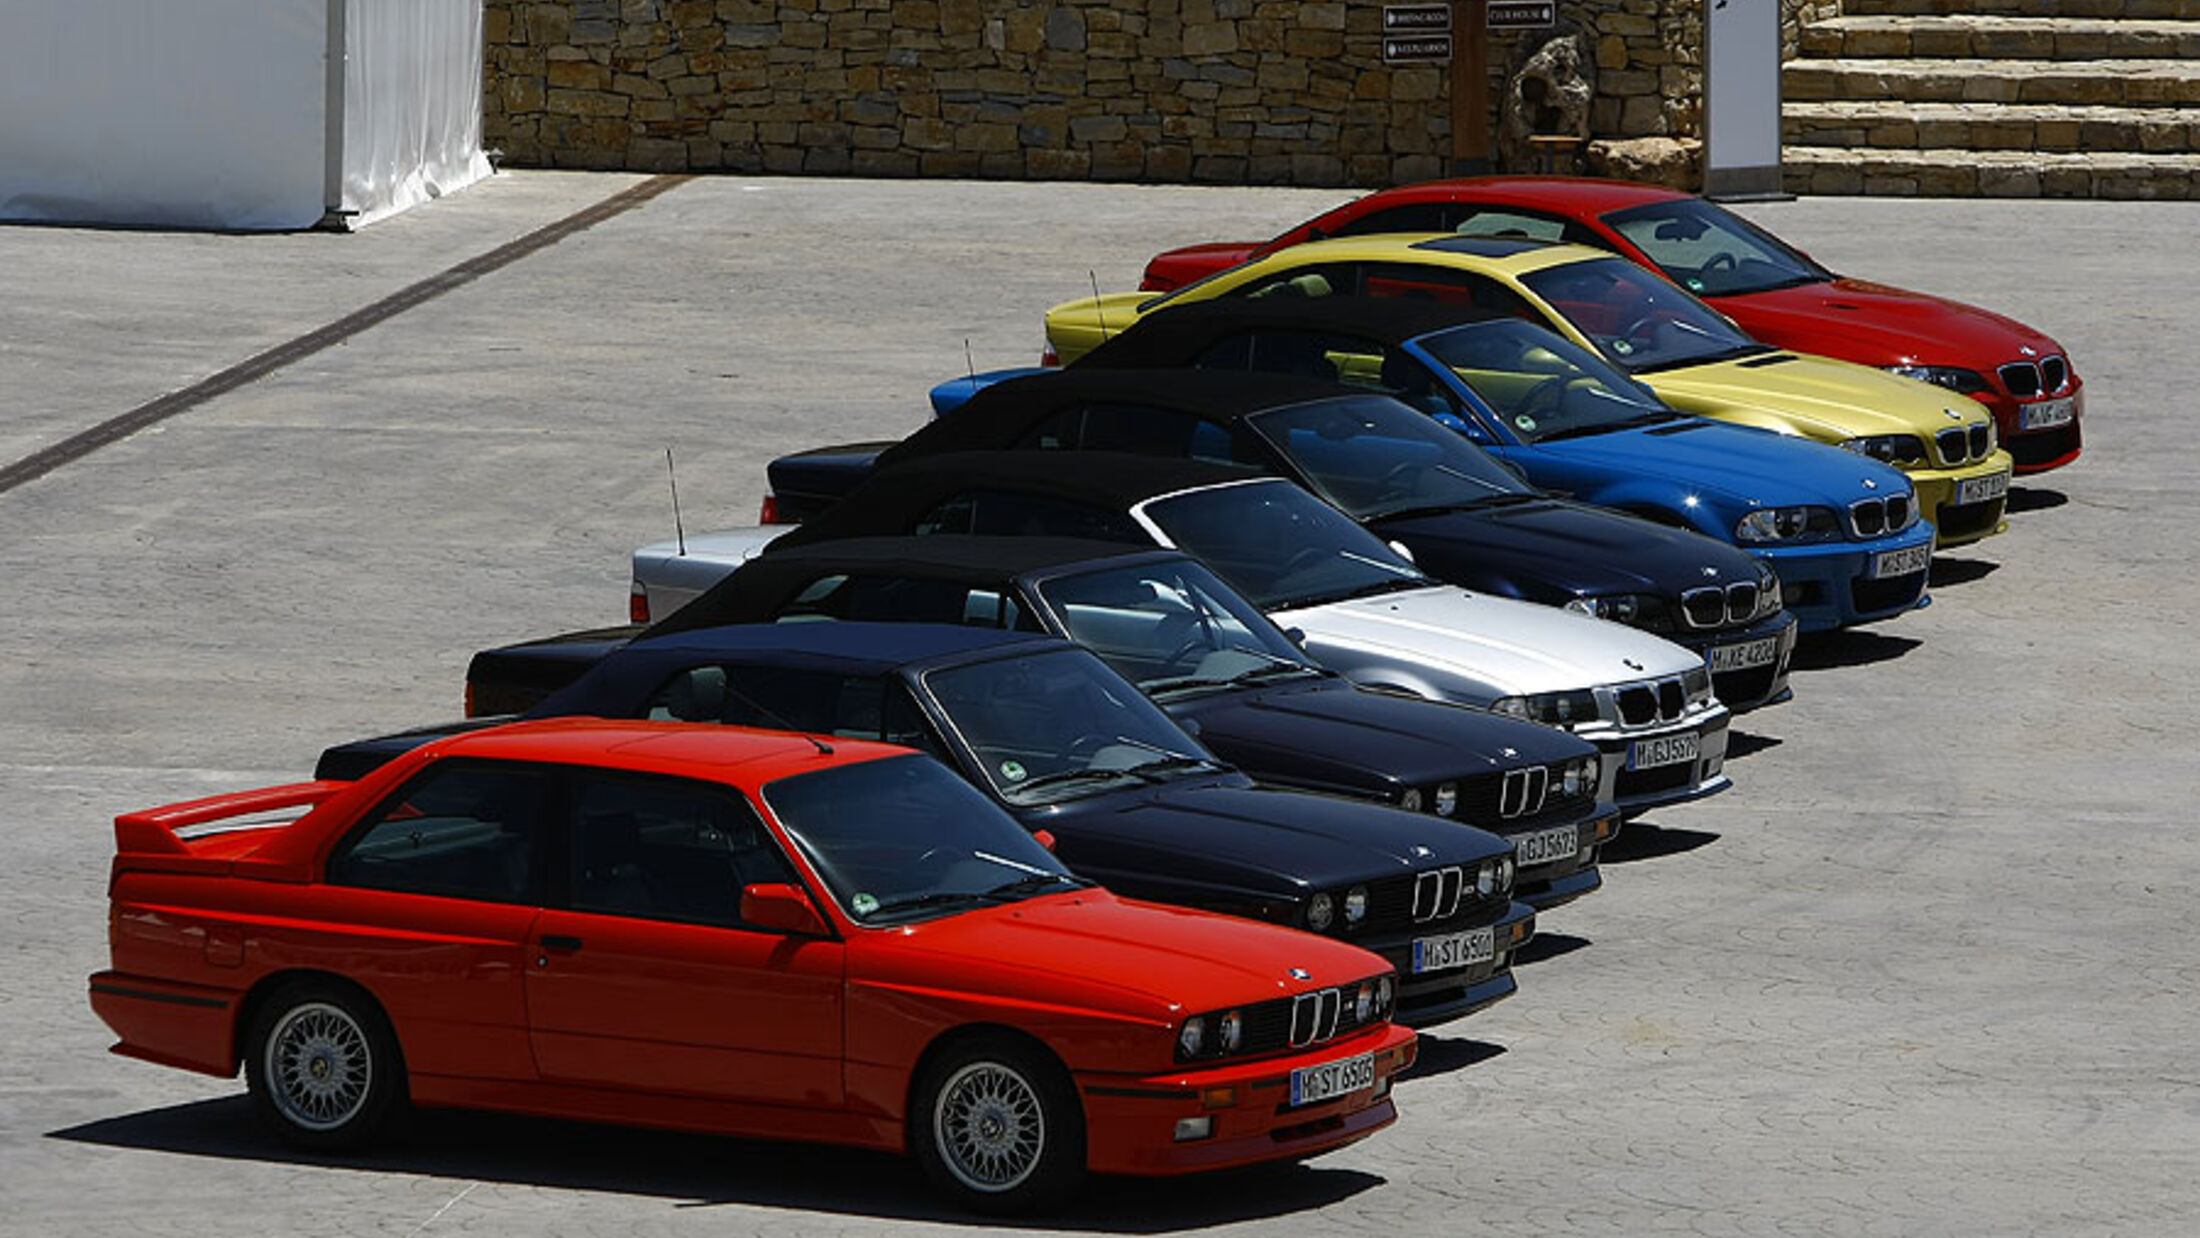 BMW M3 Modellhistorie: BMW M3 Modellvarianten mit Preisen